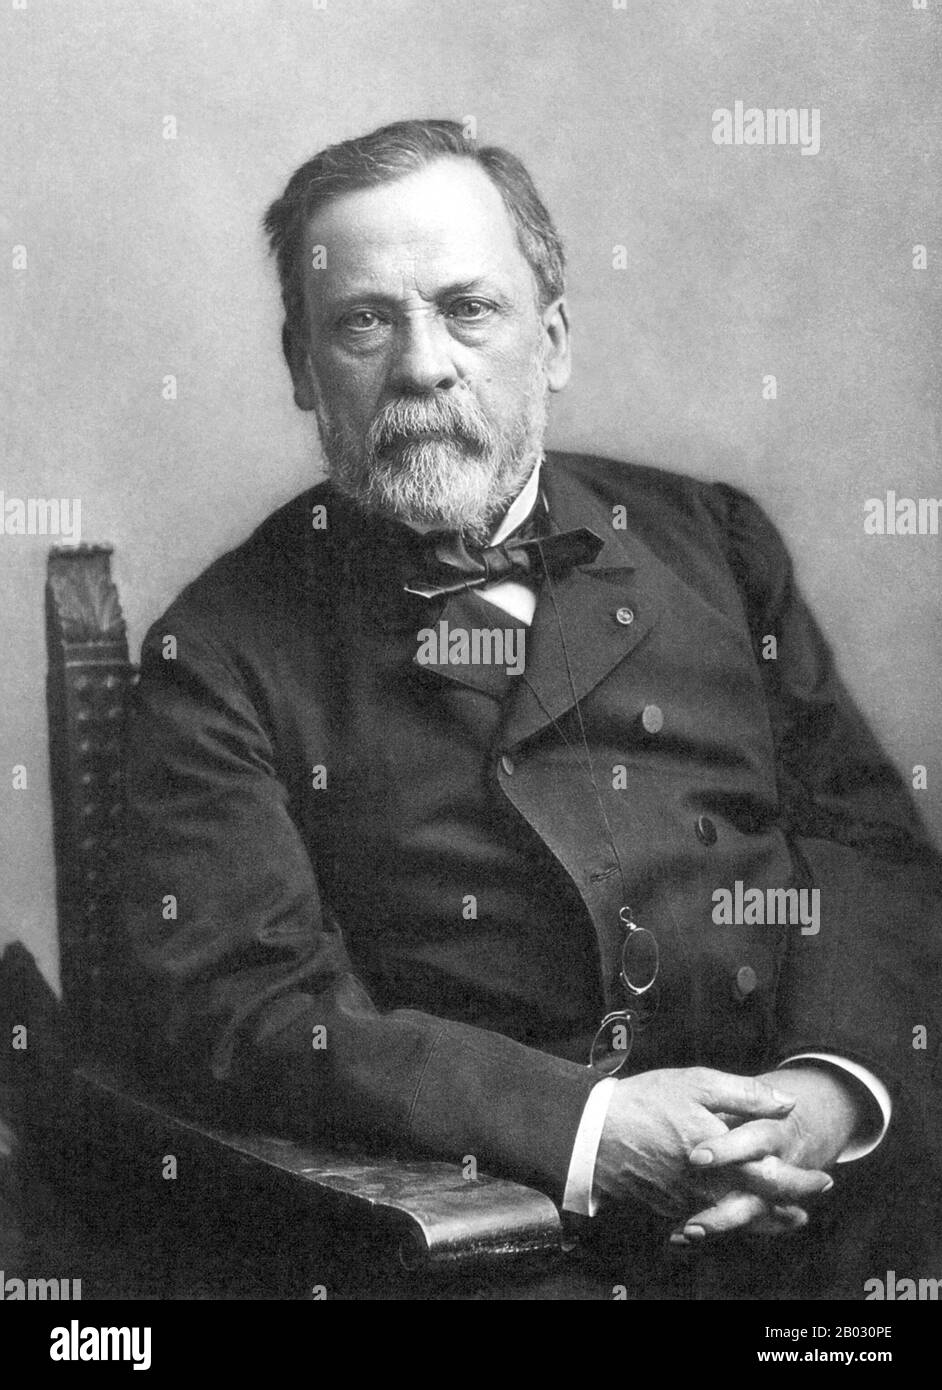 Louis Pasteur (1822–1895) è stato un chimico e microbiologo francese rinomato per le sue scoperte sui principi della vaccinazione, della fermentazione microbica e della pastorizzazione. Ha ridotto la mortalità dalla febbre puerperale, e ha creato i primi vaccini per la rabbia e l'antrace. Le scoperte mediche di Pasteur hanno fornito un sostegno diretto alla teoria germinale della malattia e alla sua applicazione nella medicina clinica. Insieme a Ferdinand Cohn e Robert Koch, è considerato uno dei tre principali fondatori della batteriologia. Foto Stock